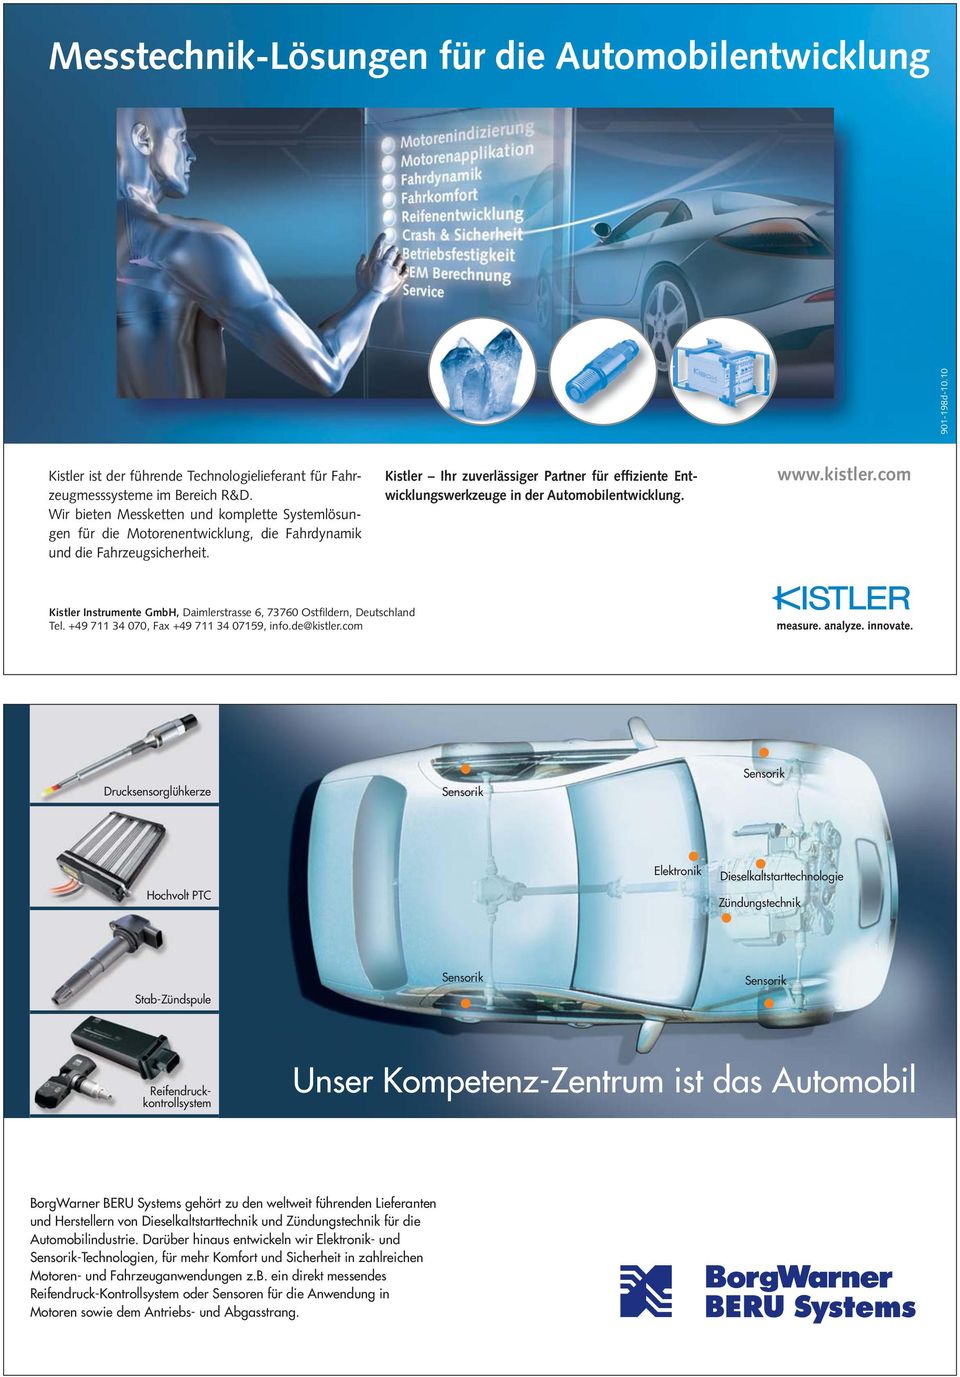 Kistler Ihr zuverlässiger Partner für effiziente Entwicklungswerkzeuge in der Automobilentwicklung. www.kistler.com Kistler Instrumente GmbH, Daimlerstrasse 6, 73760 Ostfildern, Deutschland Tel.